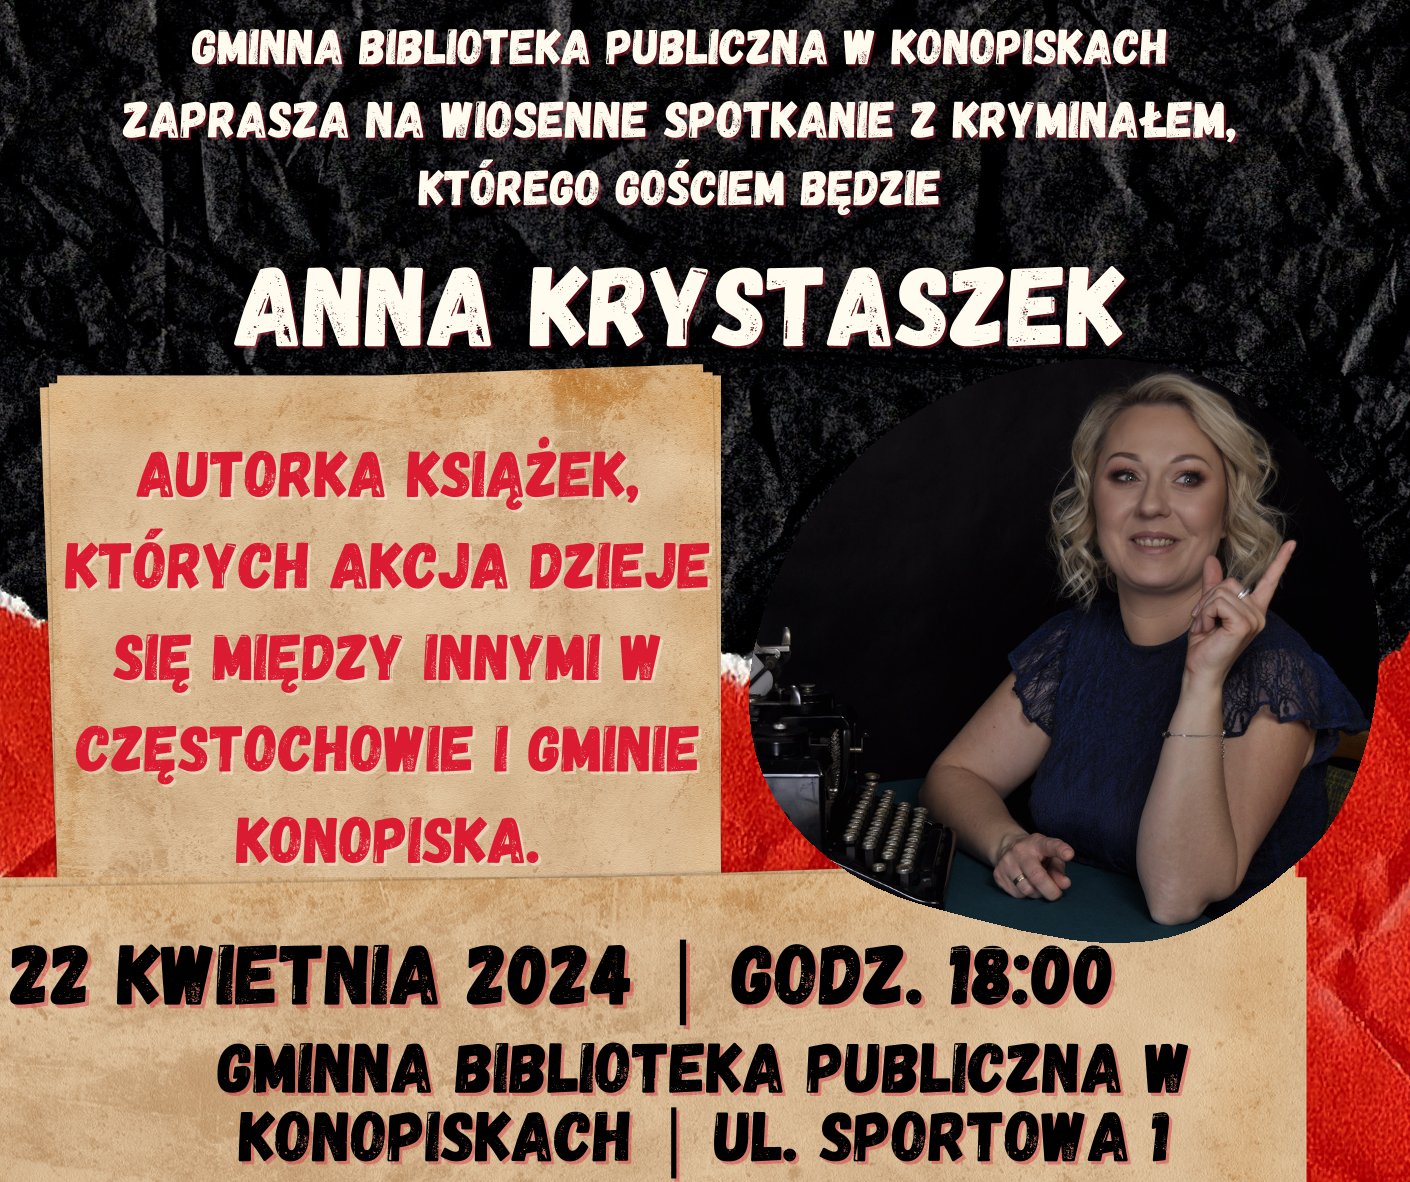 Anna Krystaszek